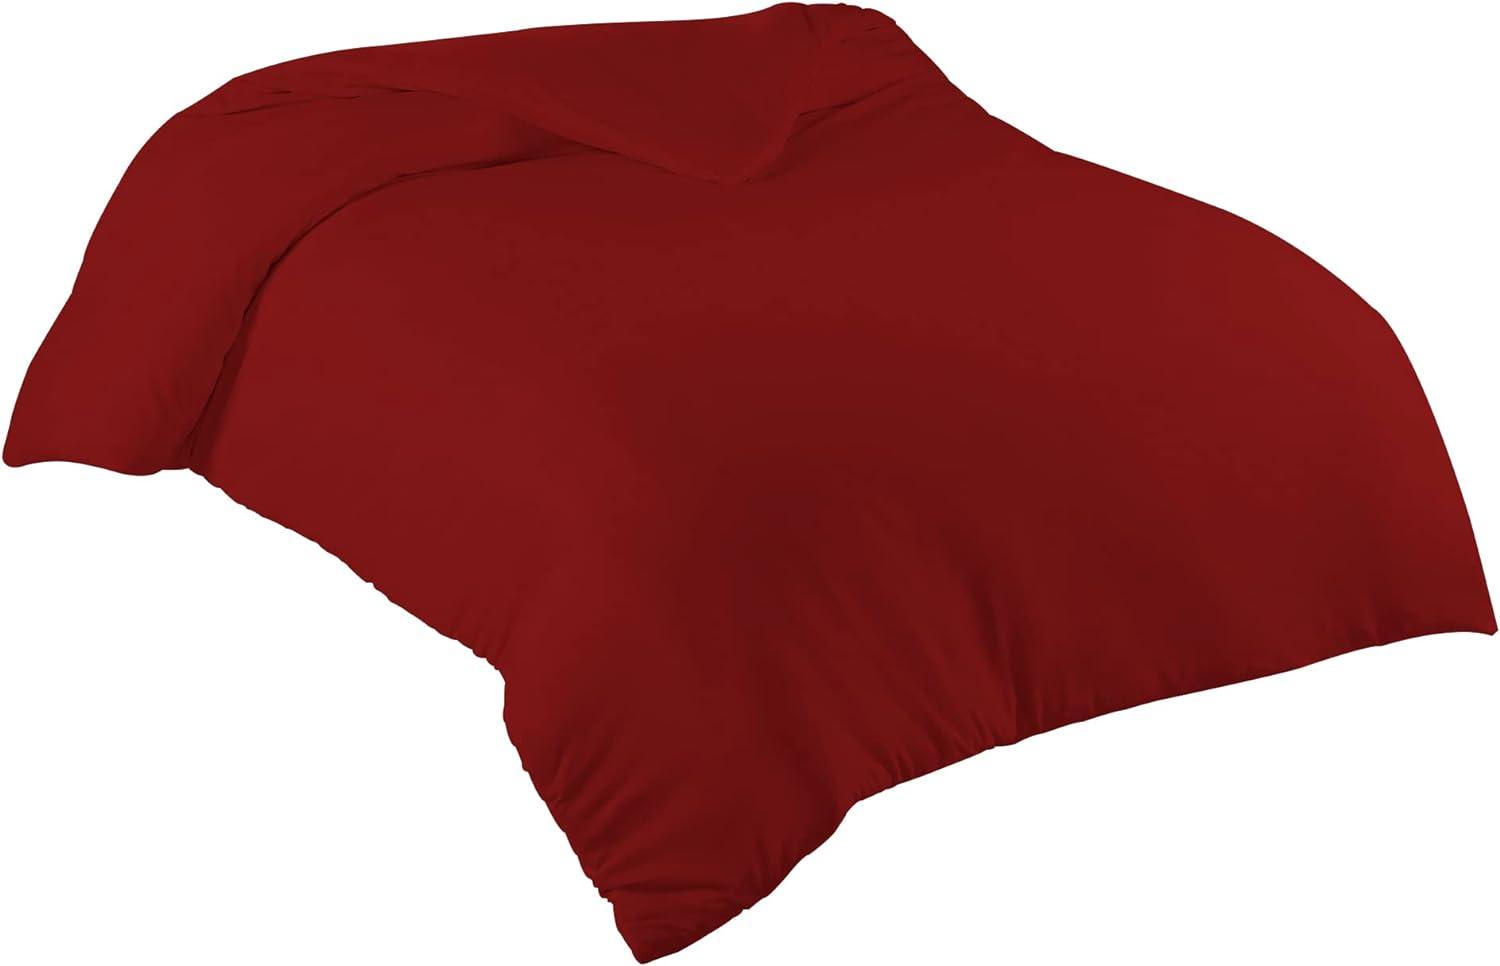 Livessa Bettbezug 200x200 cm mit Reißverschluss - Bettbezug 200x200 aus%100 Baumwolle Single-Jersey Stoff 140 g/m², Ultra weich und atmungsaktiv, Oeko-Tex Zertifiziert, 13 schöne Farben Bild 1